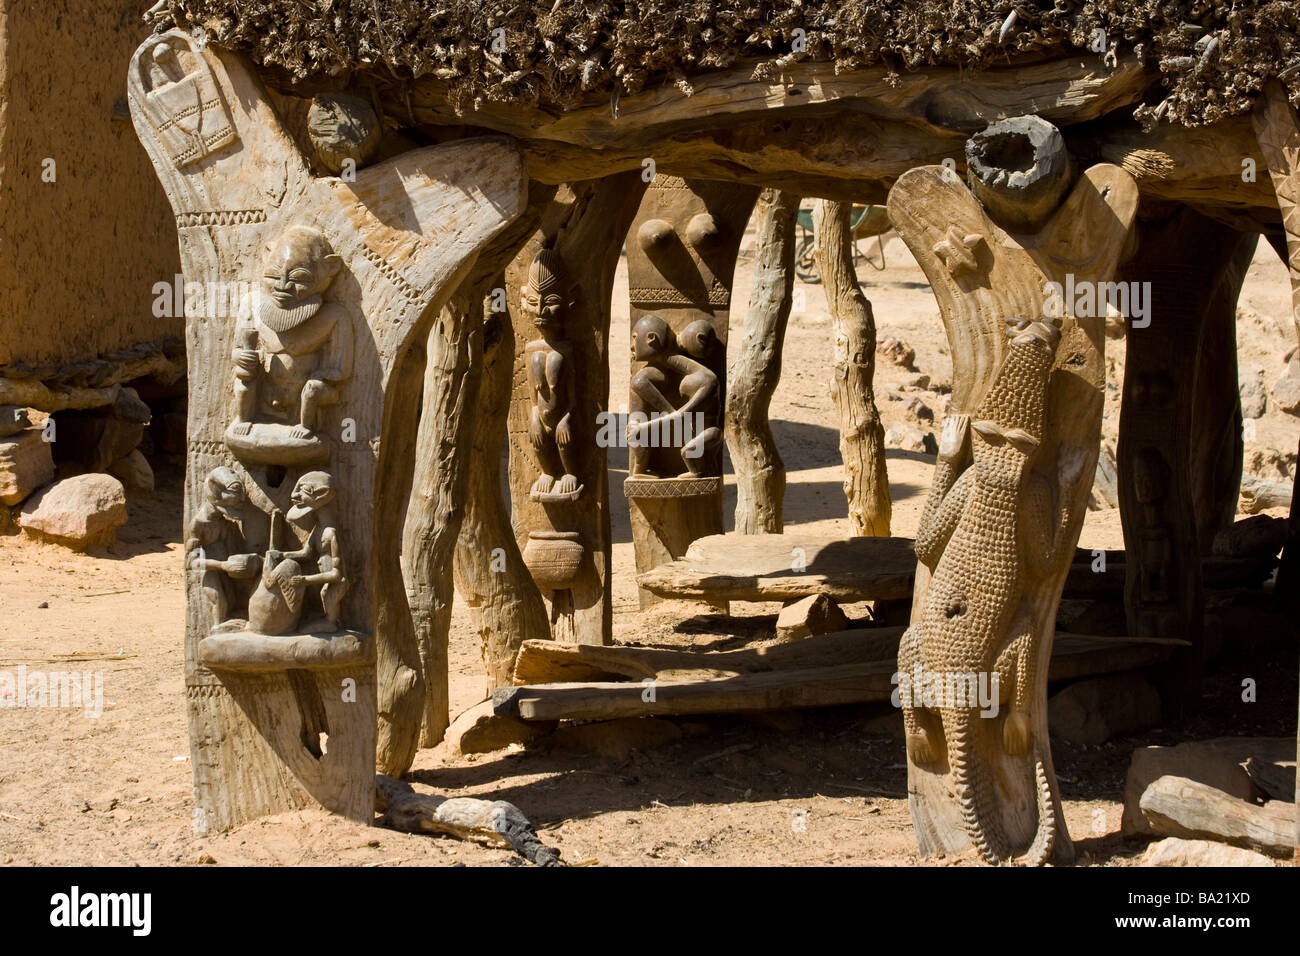 Sur les sculptures toguna ou cas à palabres le principal lieu de rencontre d'un village Dogon Village Kundu dans le pays Dogon Mali Afrique Banque D'Images